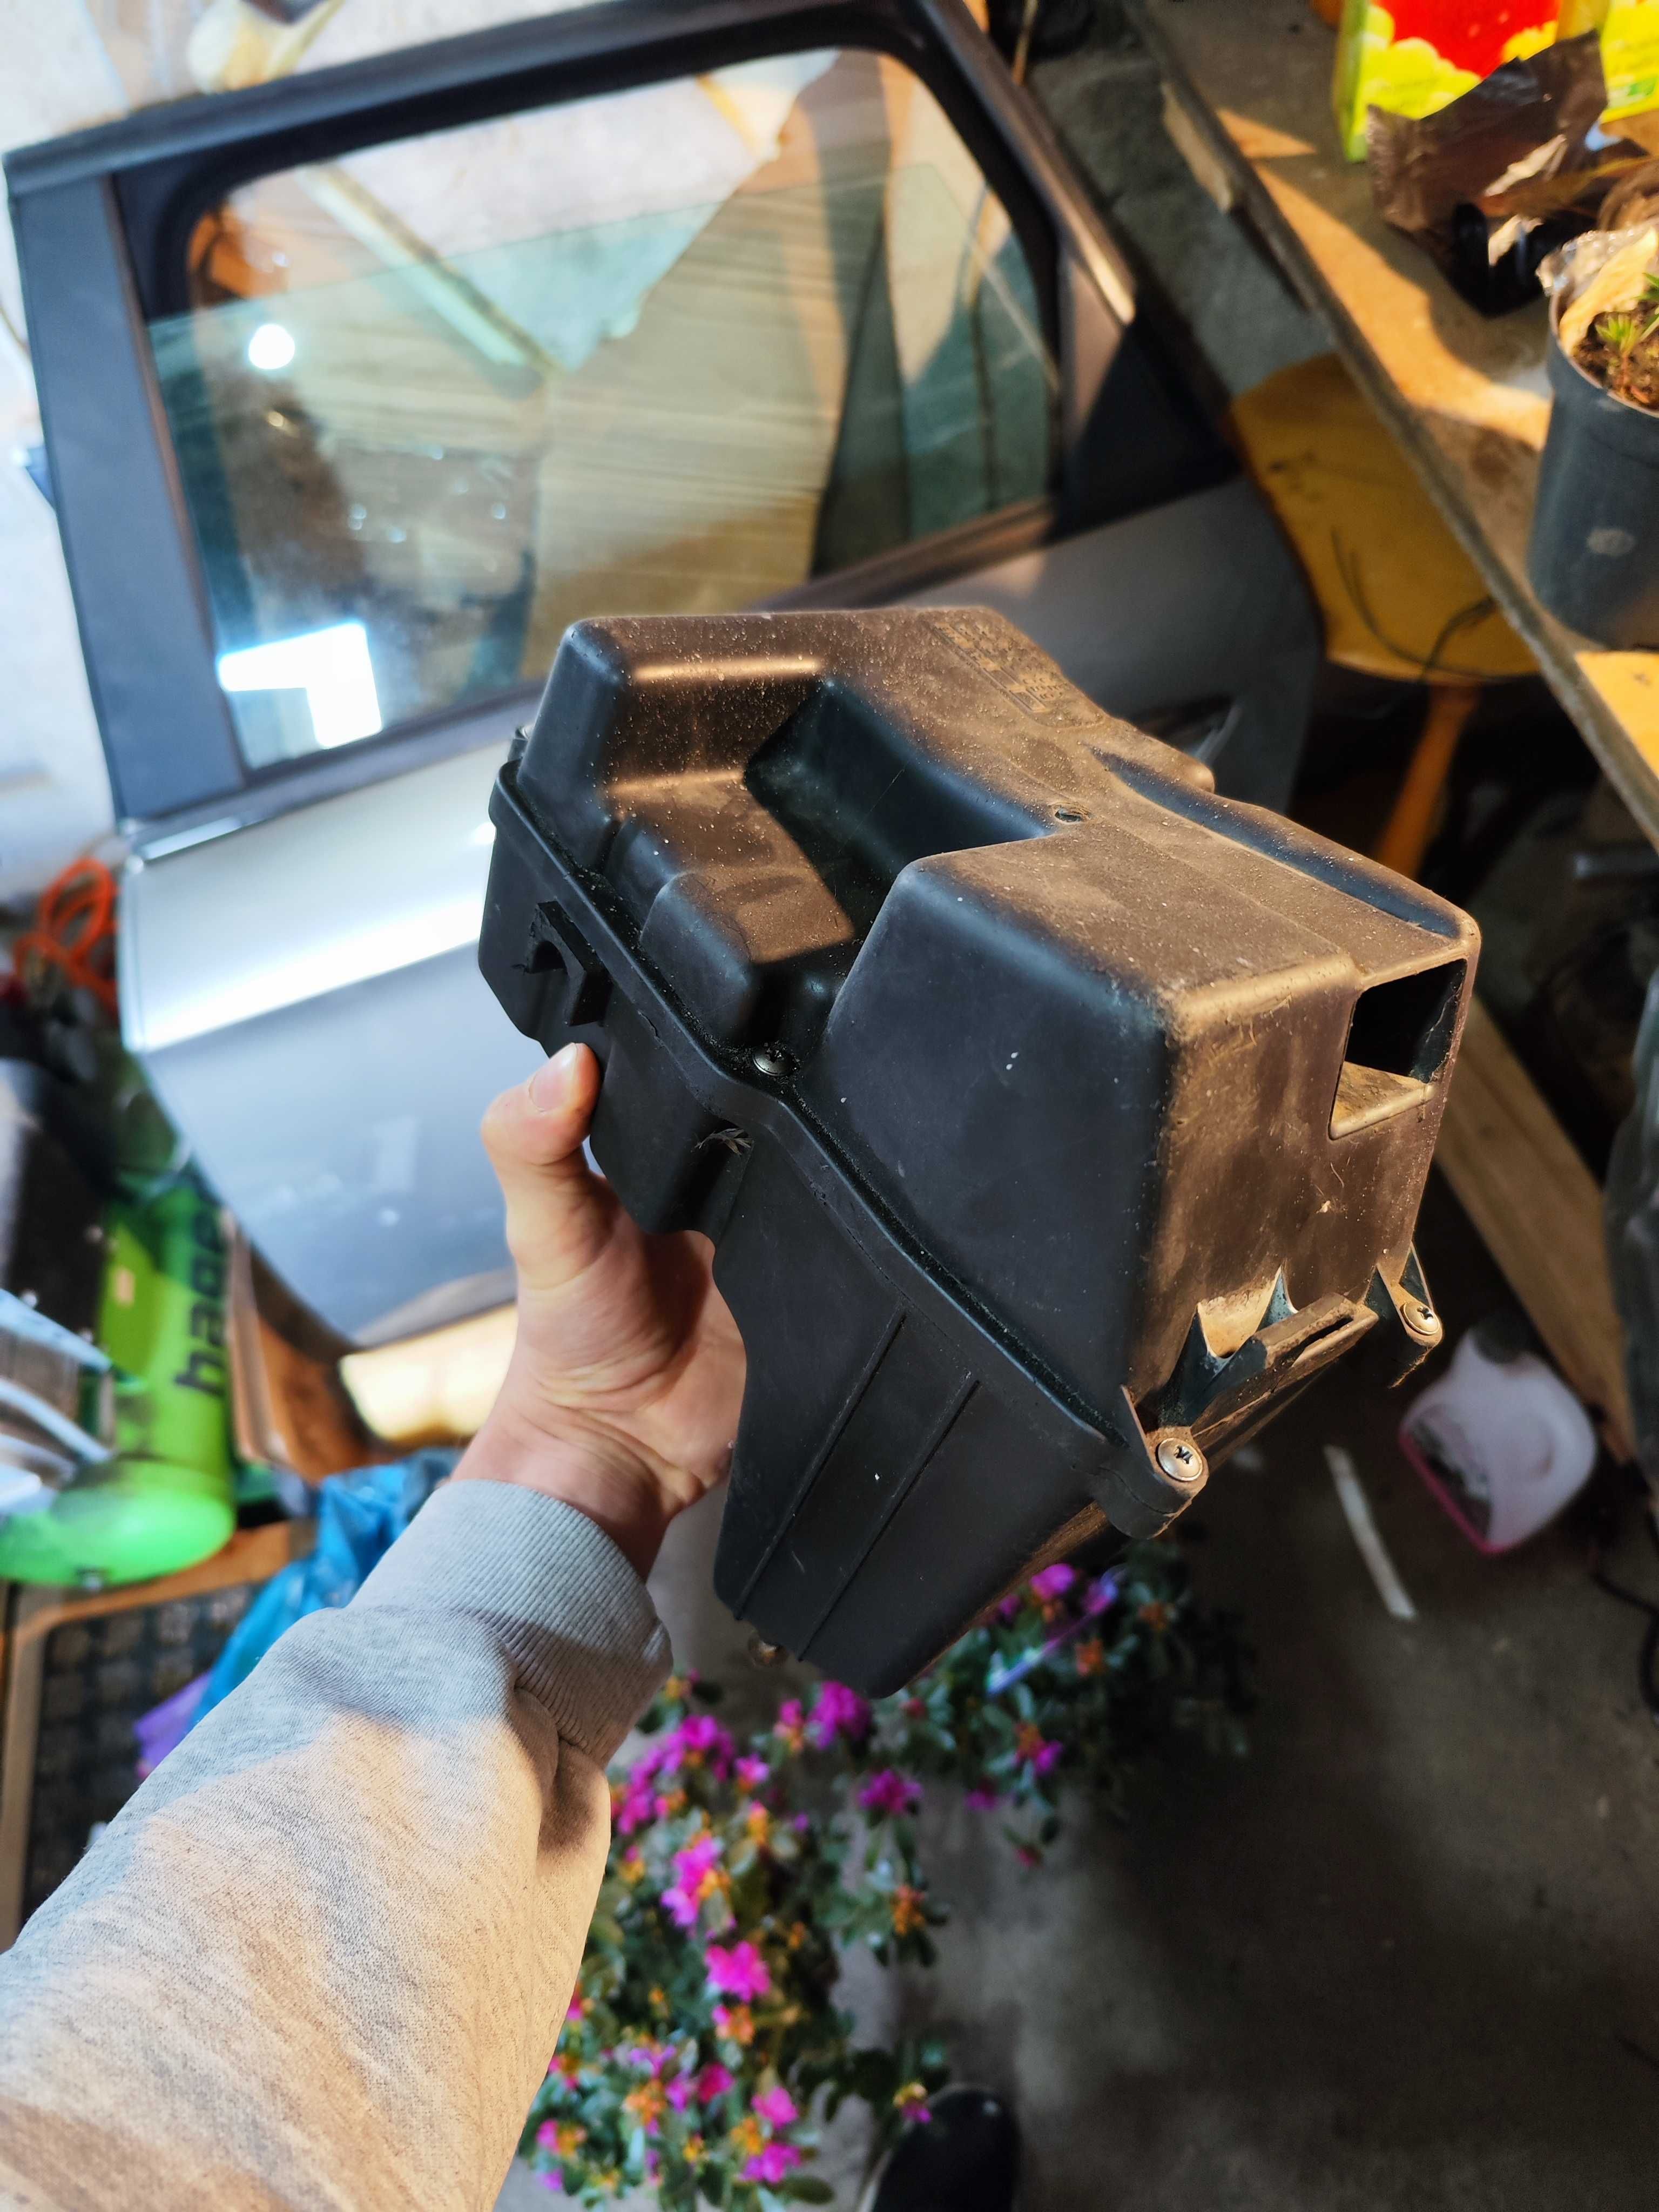 Airbox RS50 filtr obudowa